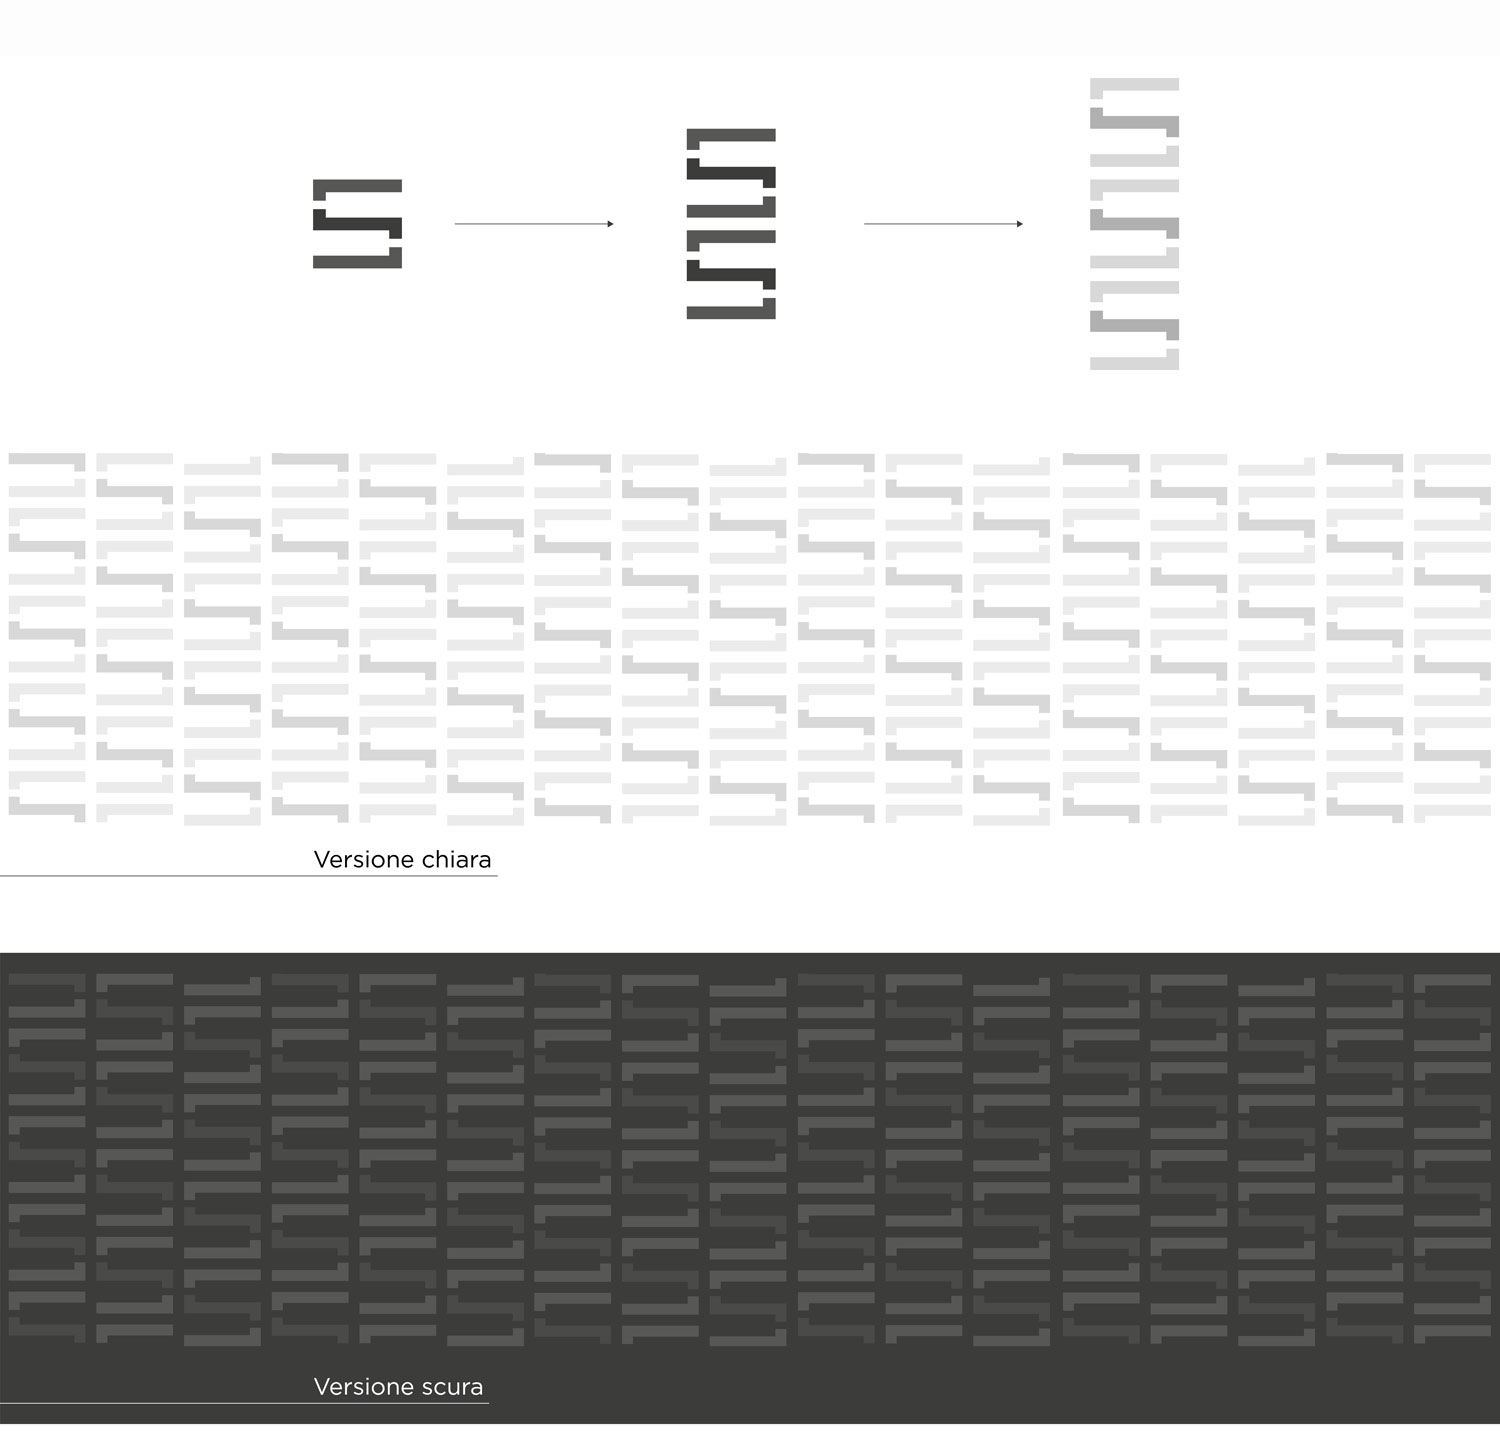 Logo e brand identity di Savoia realizzato da SEBA! grafico di Gravellona Toce nel VCO della spiegazione del pattern